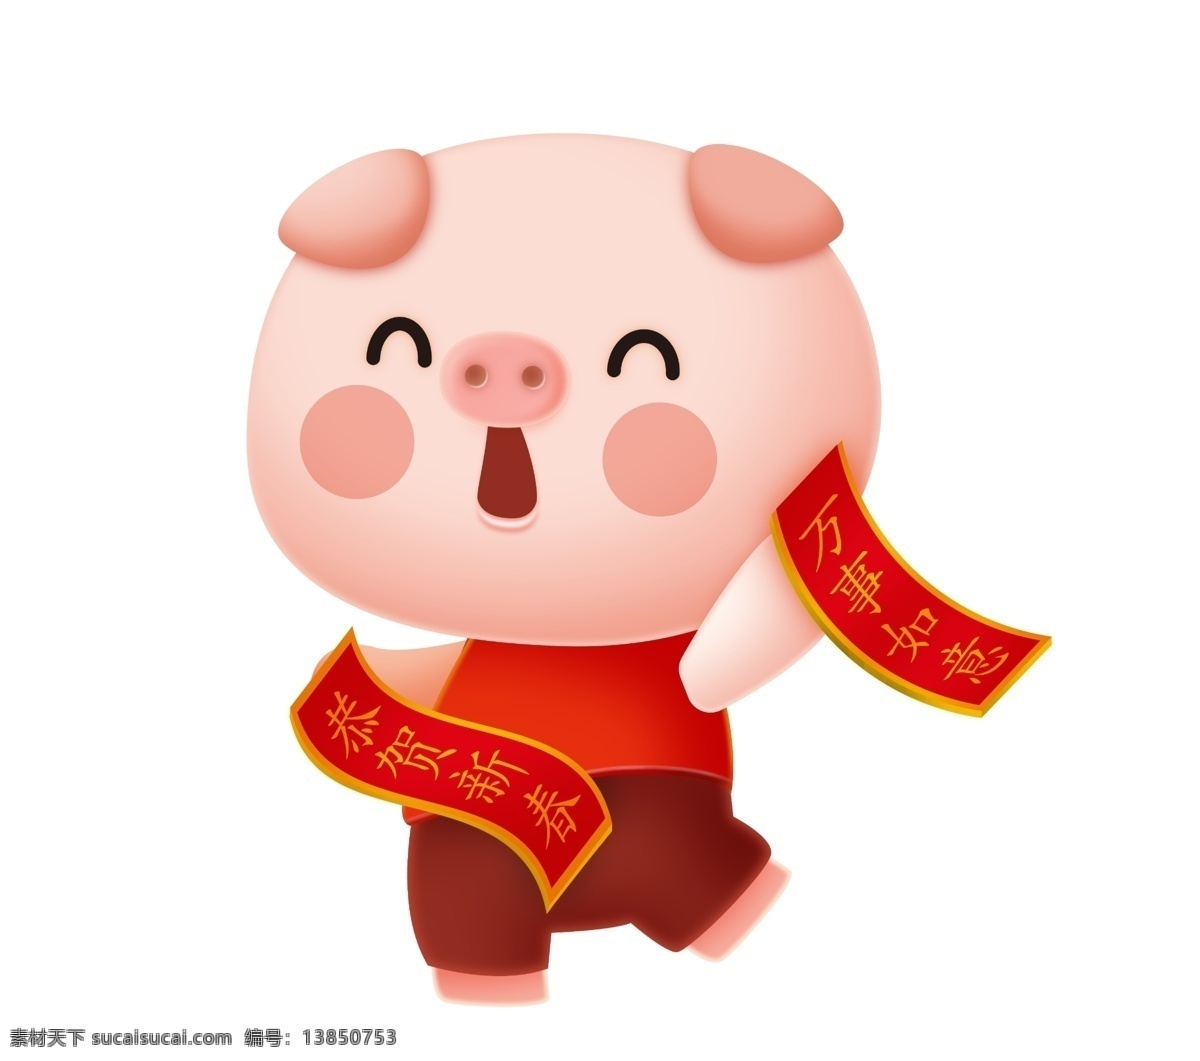 恭贺 新春 小 猪 插画 手绘小猪 对联 恭贺新春 万事如意 粉色的小猪 跳动的小猪 憨厚 可爱